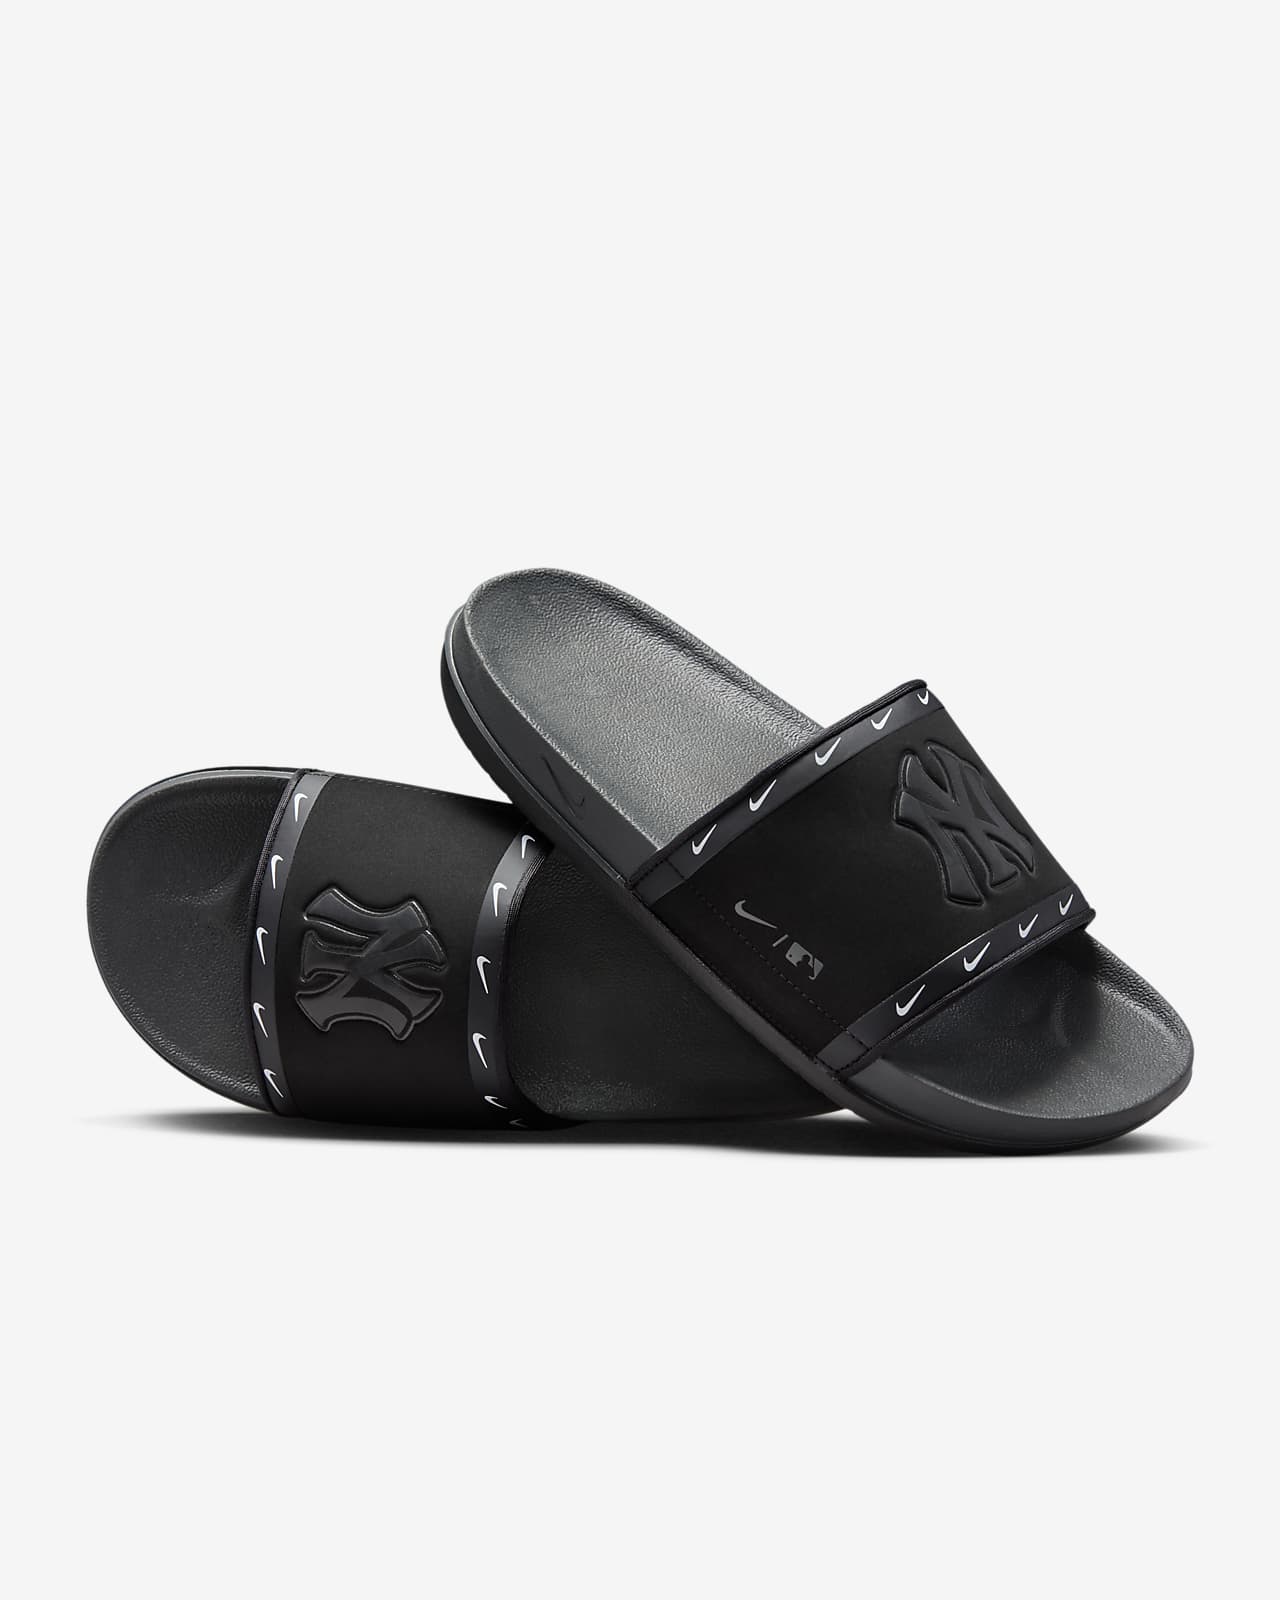 Louis Vuitton Mens Black & Blue Sandals Size 7